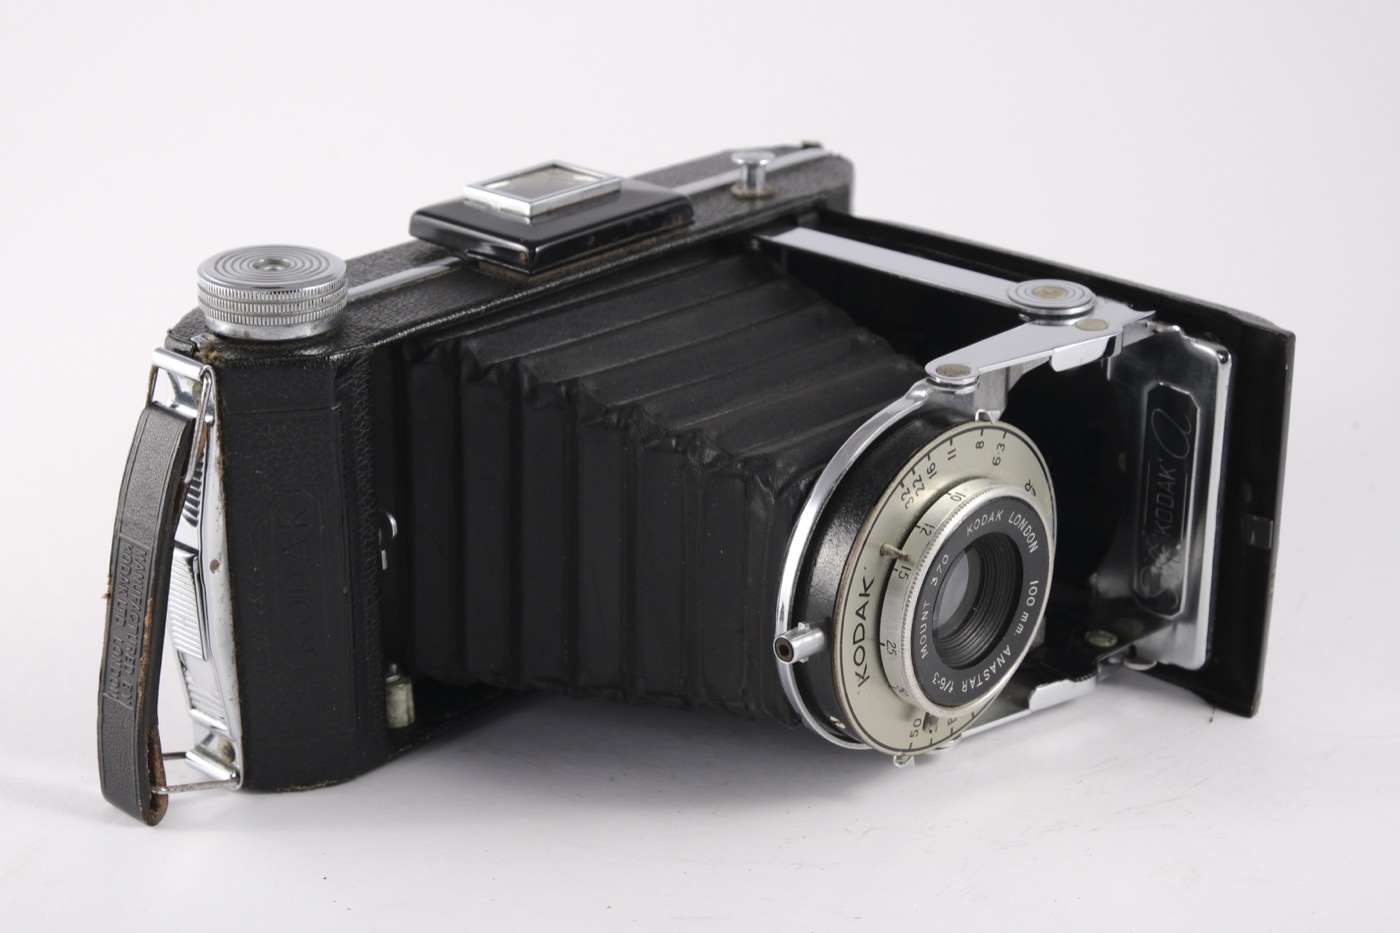 Kodak Six-20 Model A camera